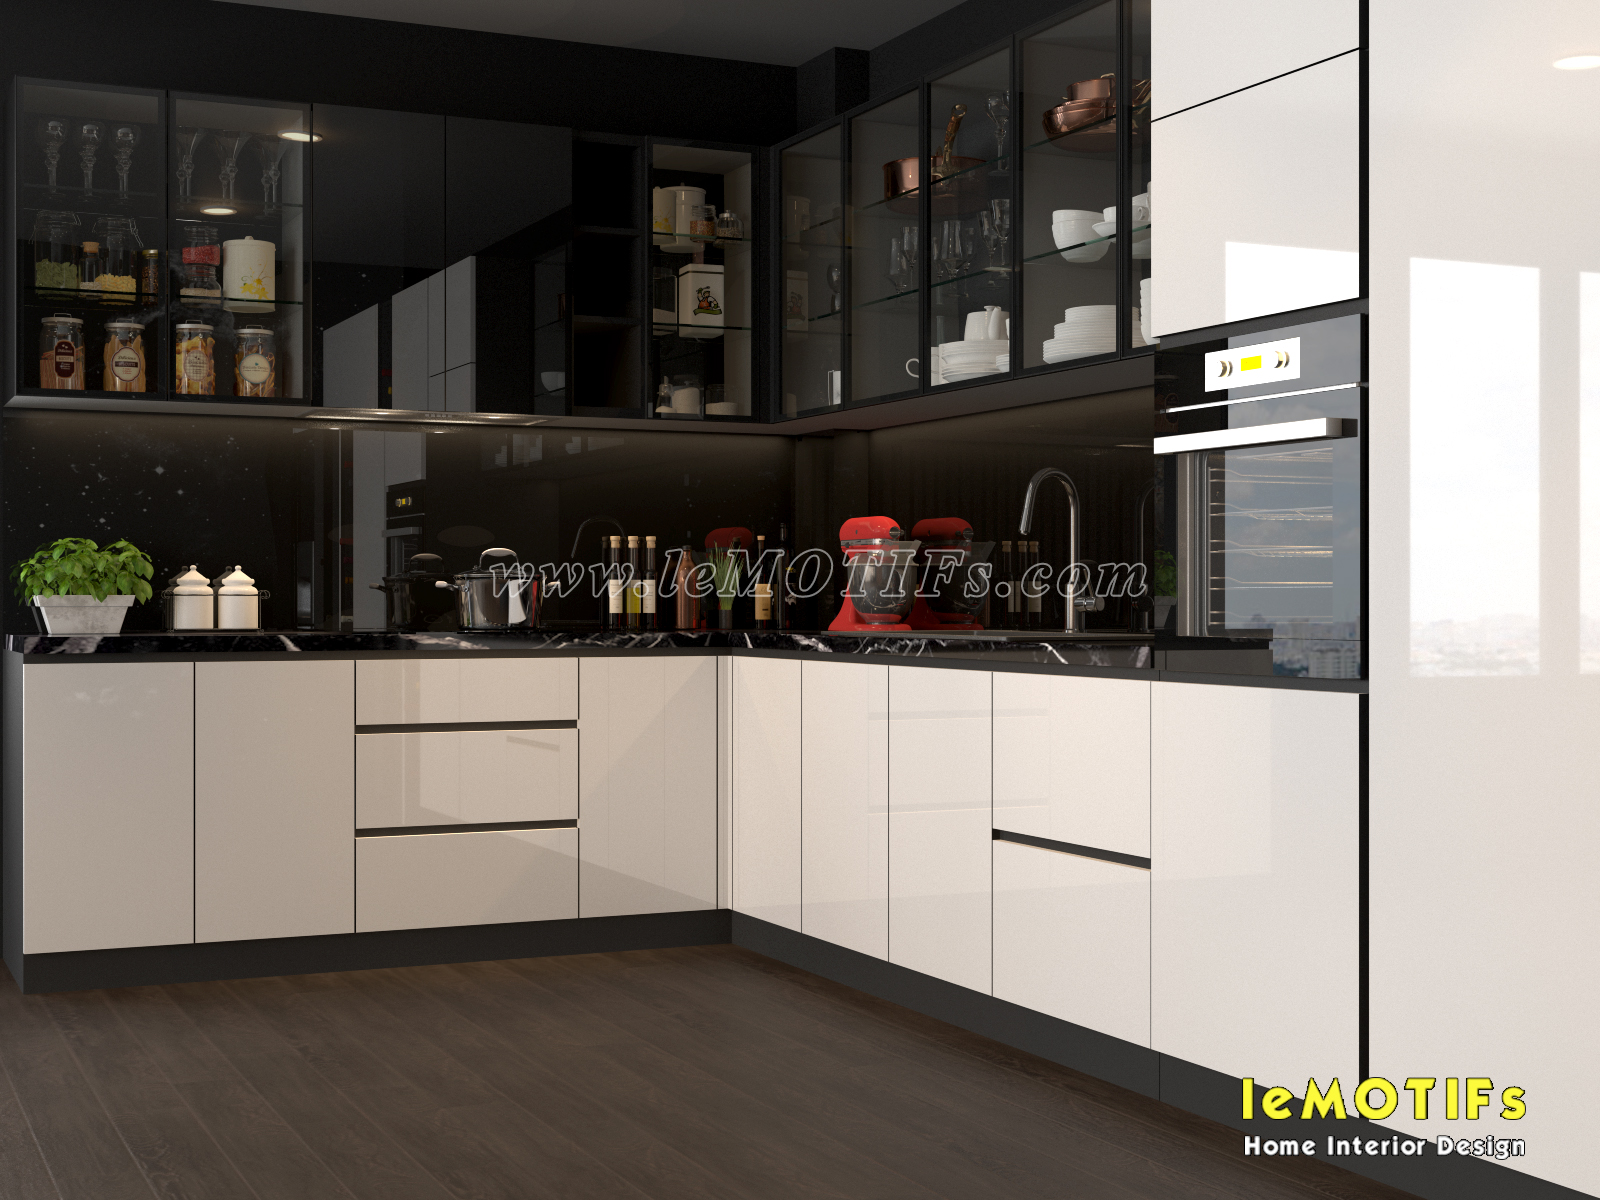 <img src=” http://lemotifs.com/wp-content/uploads/2019/05/Thiet-ke-tu-bep-phong-cach-trang-va-den-nha-co-mai-quan-10-V4.jpg” alt=”thiết kế tủ bếp trắng và đen />